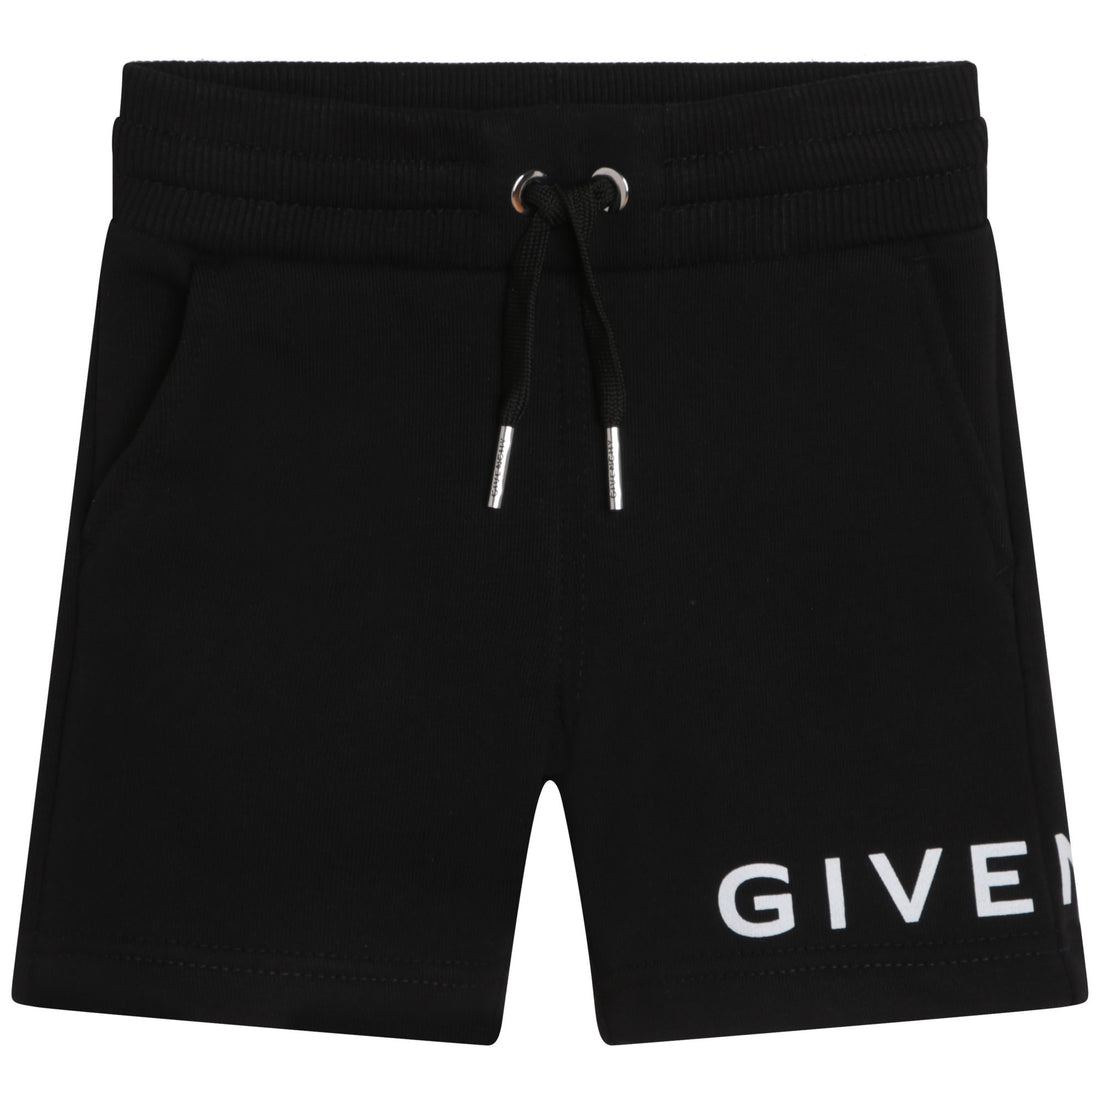 Givenchy Bermuda Shorts Style: H04157